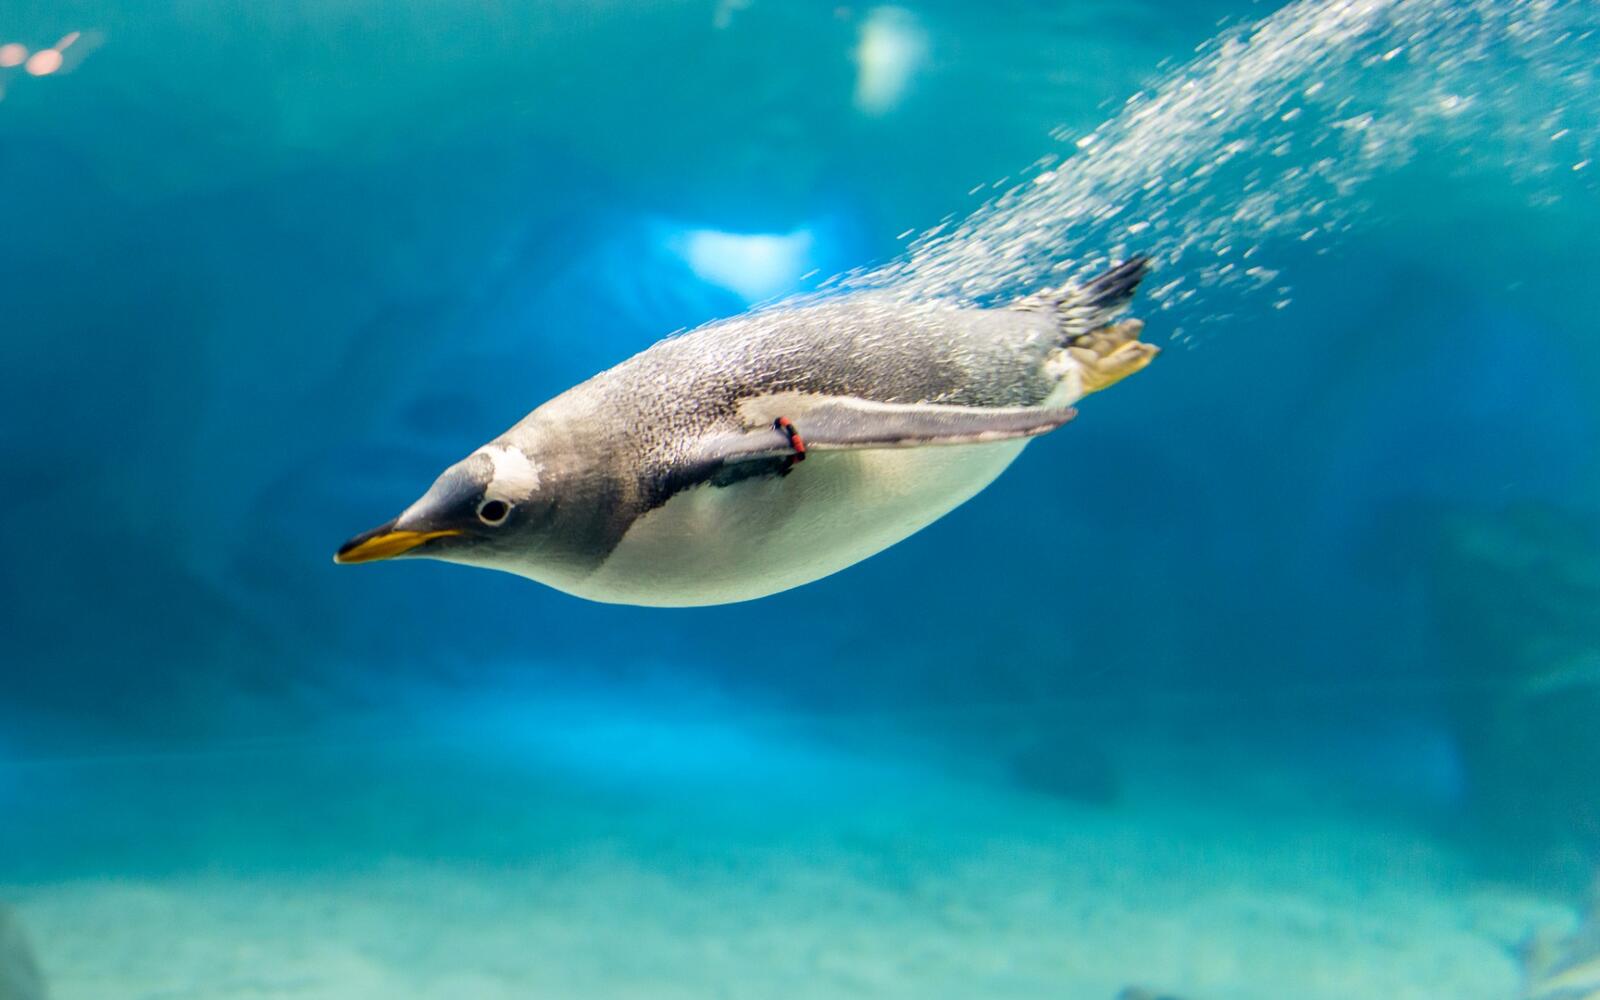 Wallpapers ocean penguin dive on the desktop